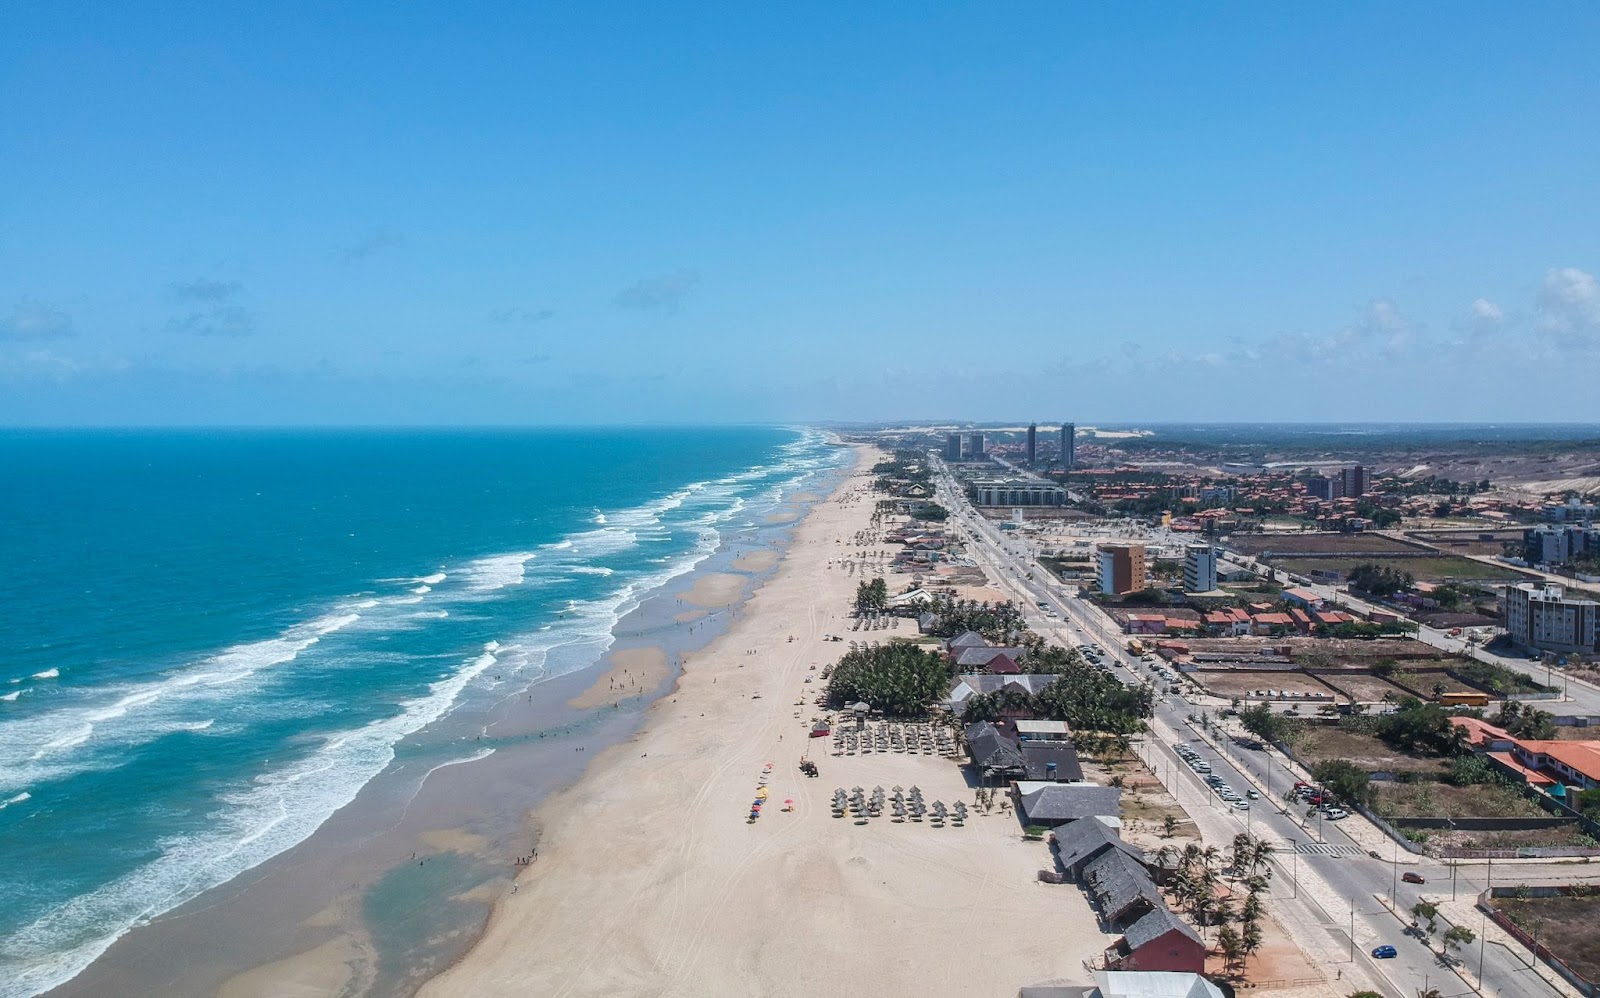 Praia do Futuro, em Fortaleza,  vista de cima. A extensa faixa de areia branca é ocupada por quiosques e guarda-sóis, mas tem muitas áreas vazias. O mar e o céu têm uma coloração azul vibrante.